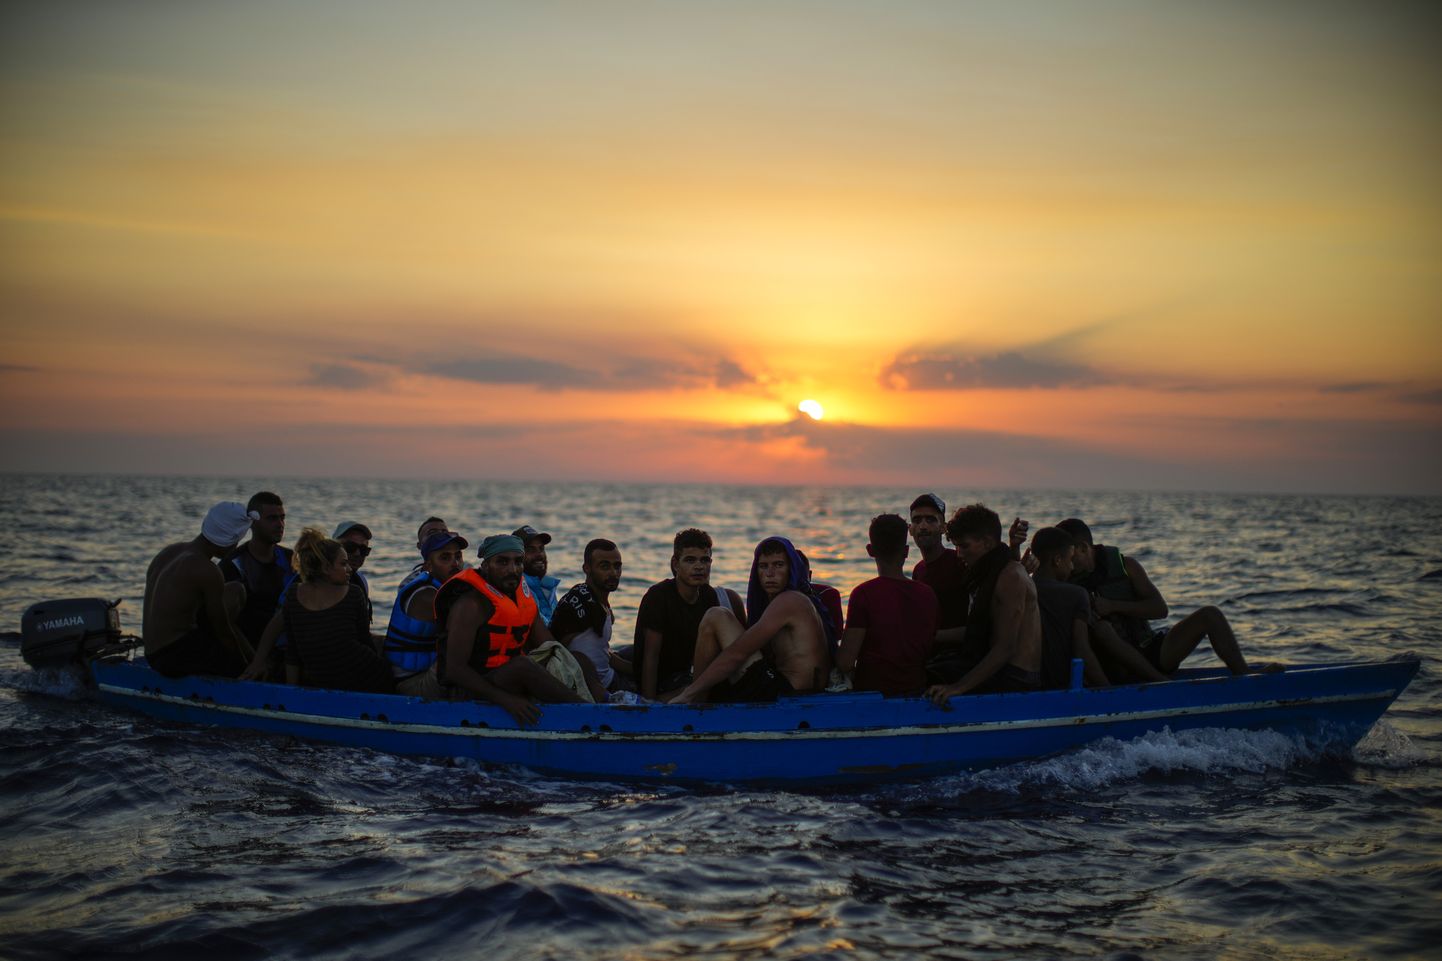 Tuneesiast pärit sisserändajad puupaadis Itaalia Pantelleria saare läheduses.